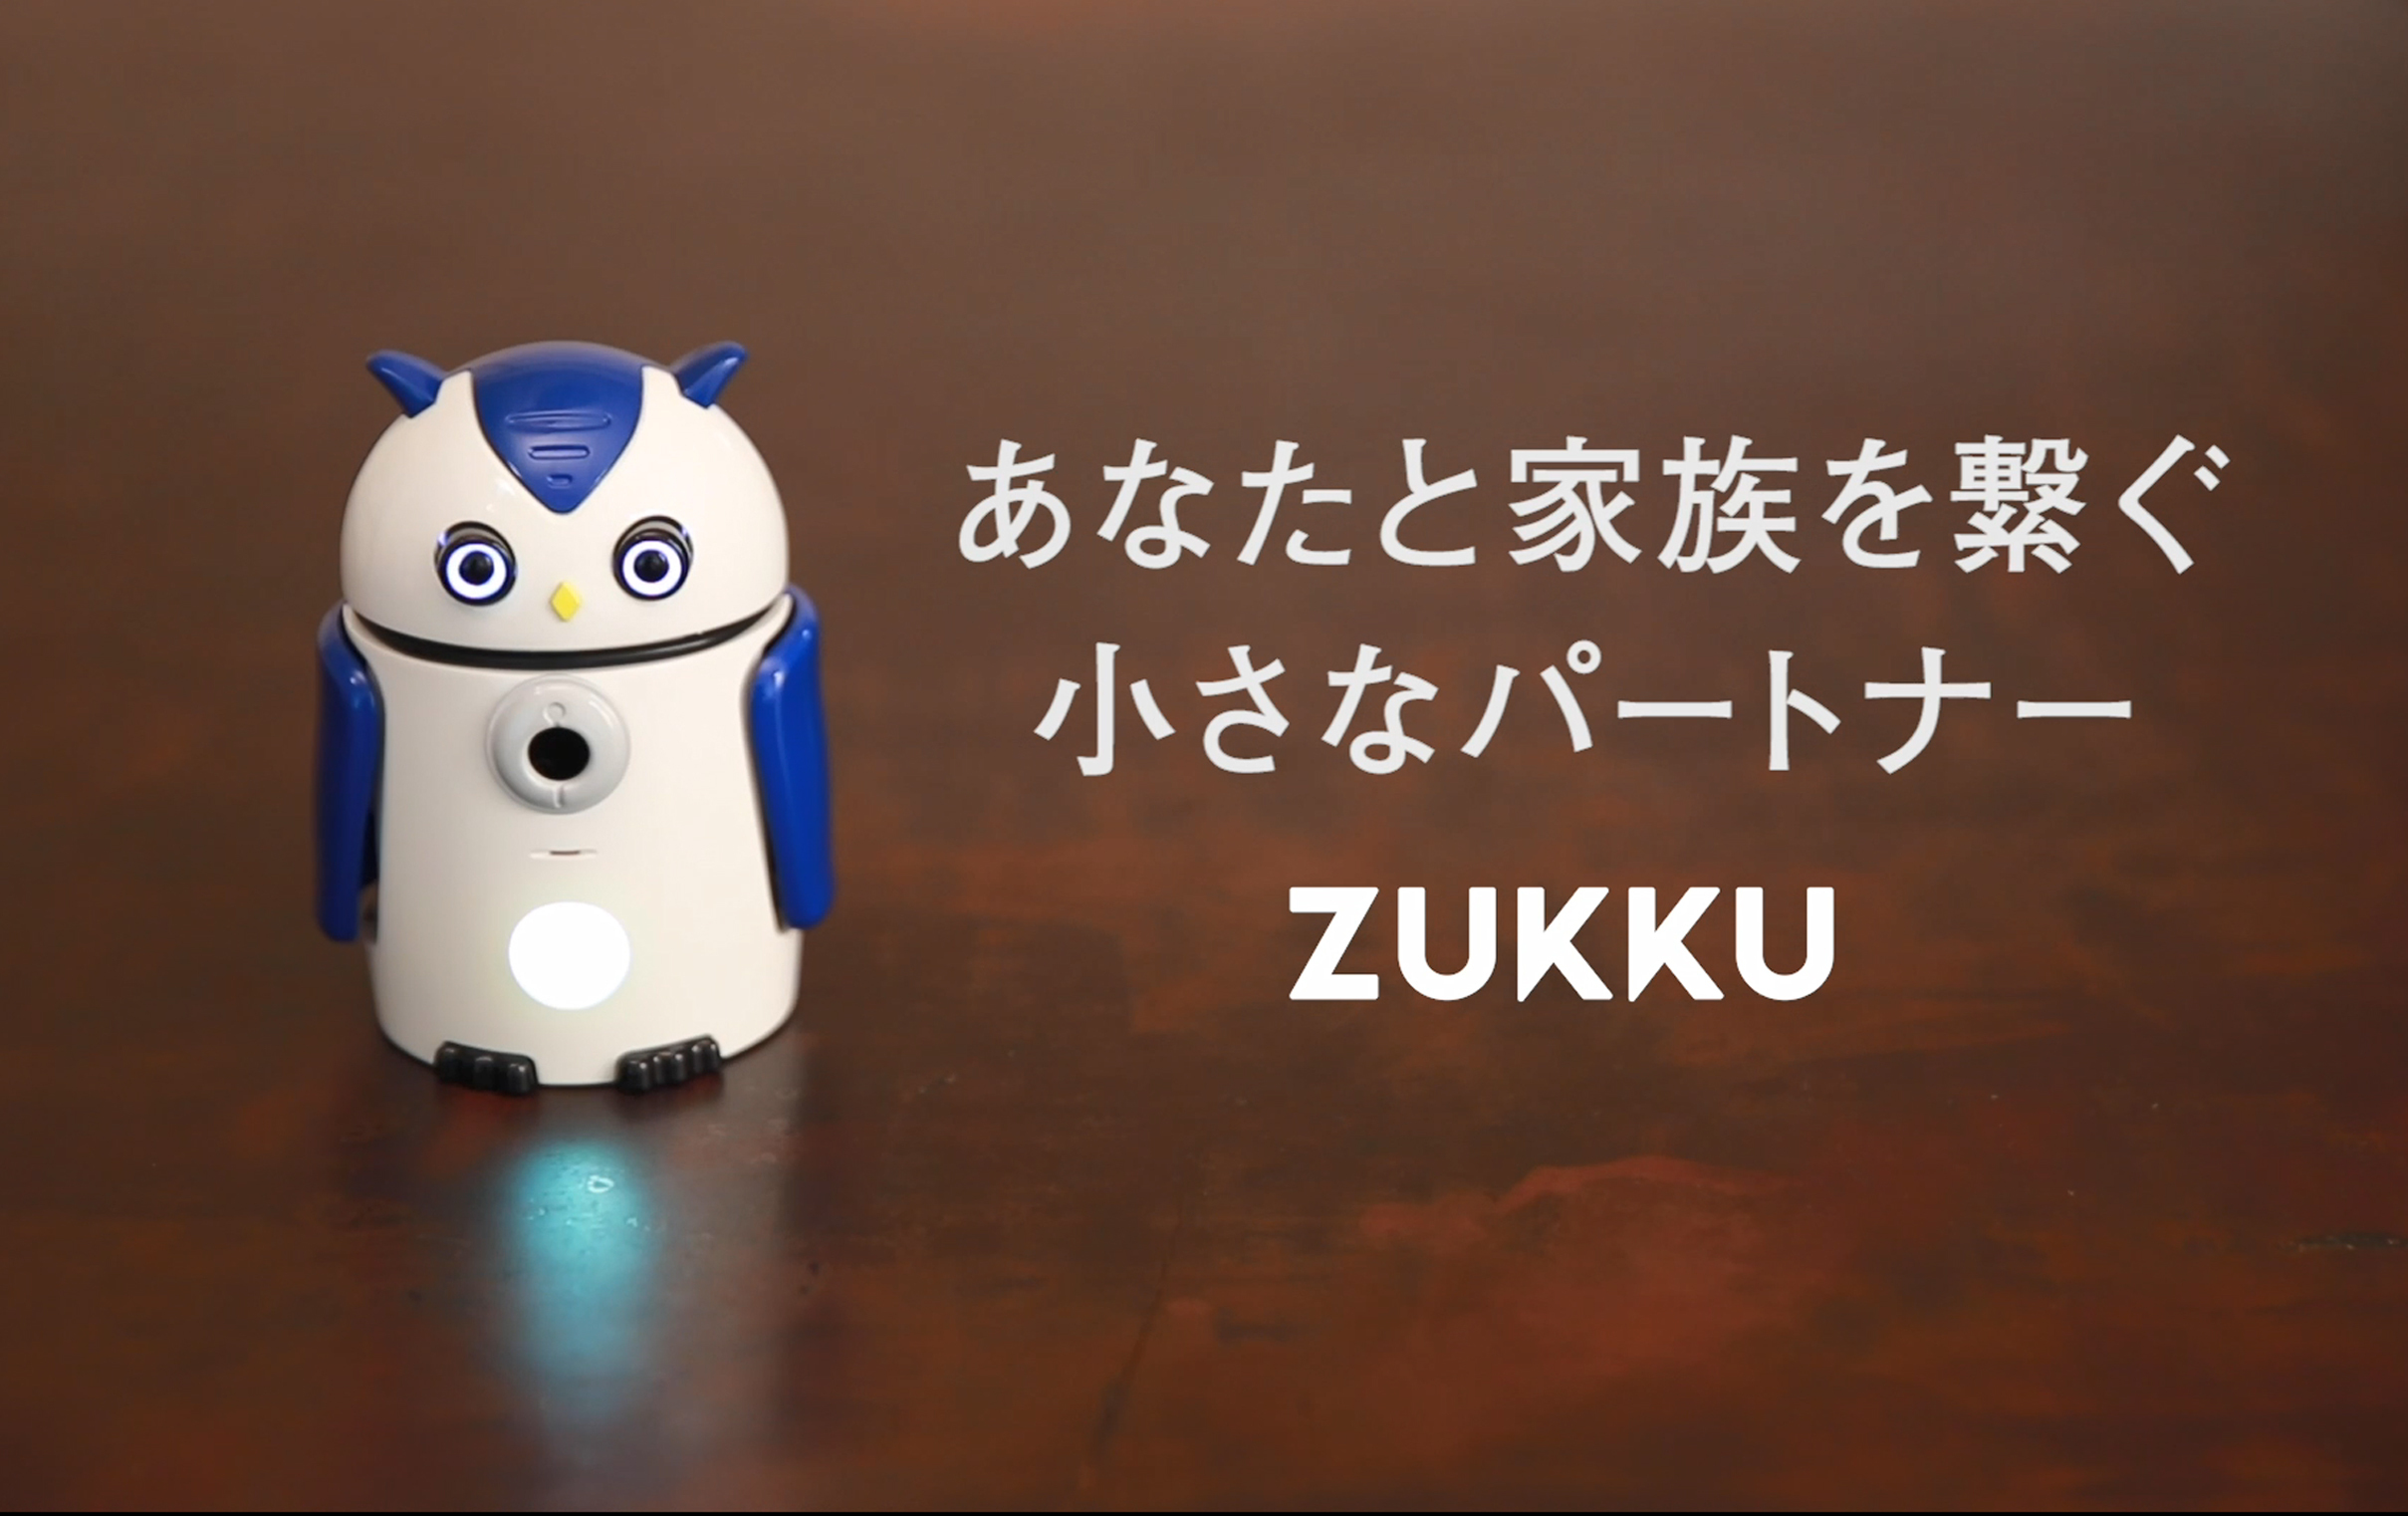 見守りaiロボットzukku コミュニケーション機能向上 株式会社オートバックスセブンのプレスリリース